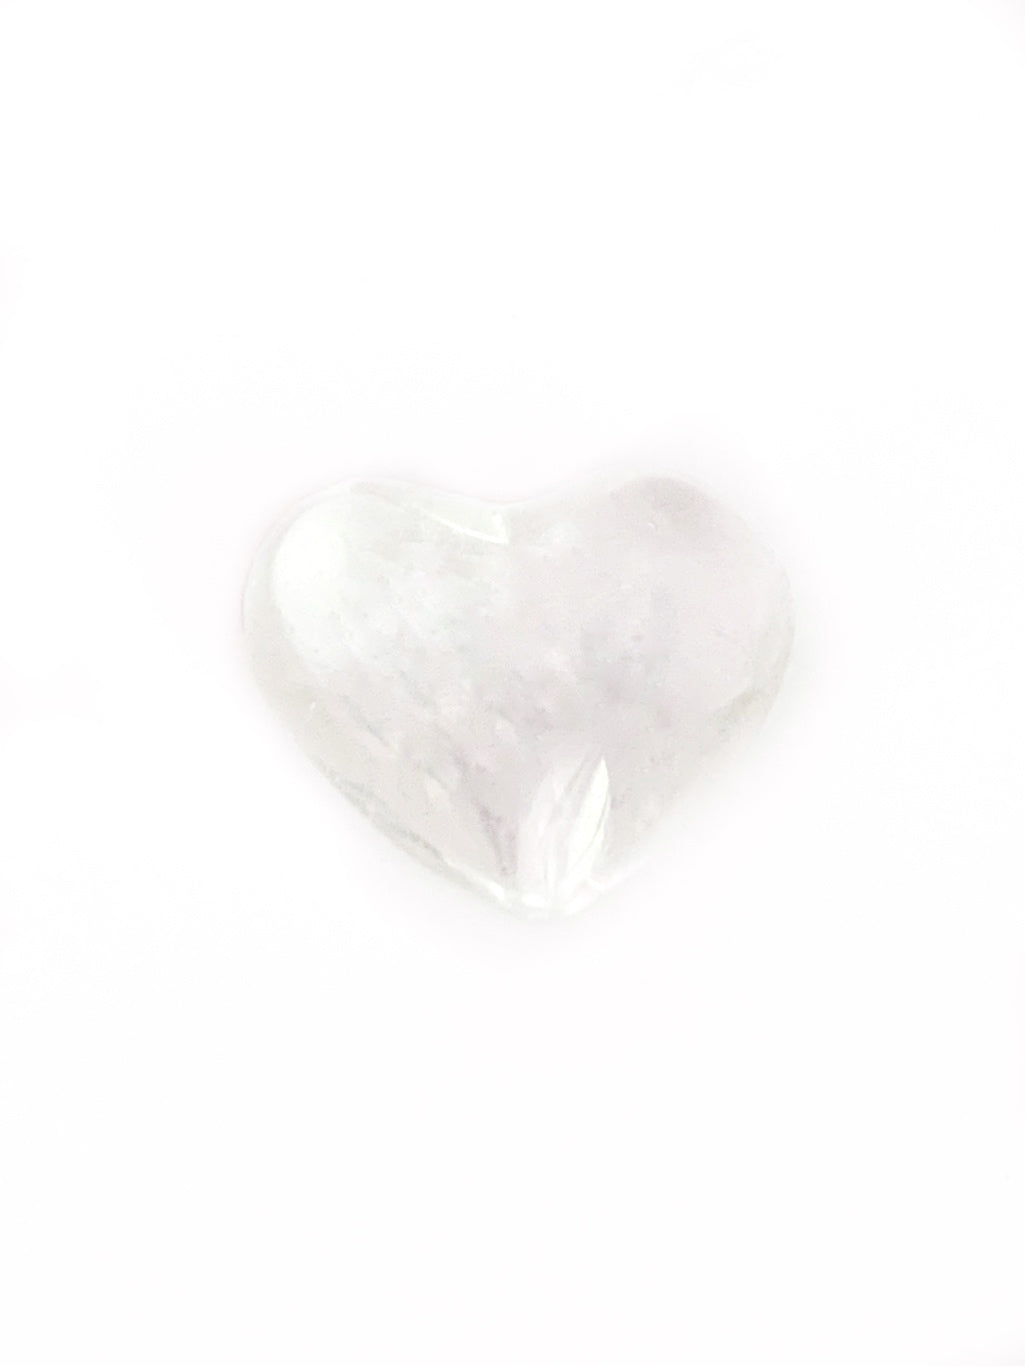 Clear quartz heart - 4cm